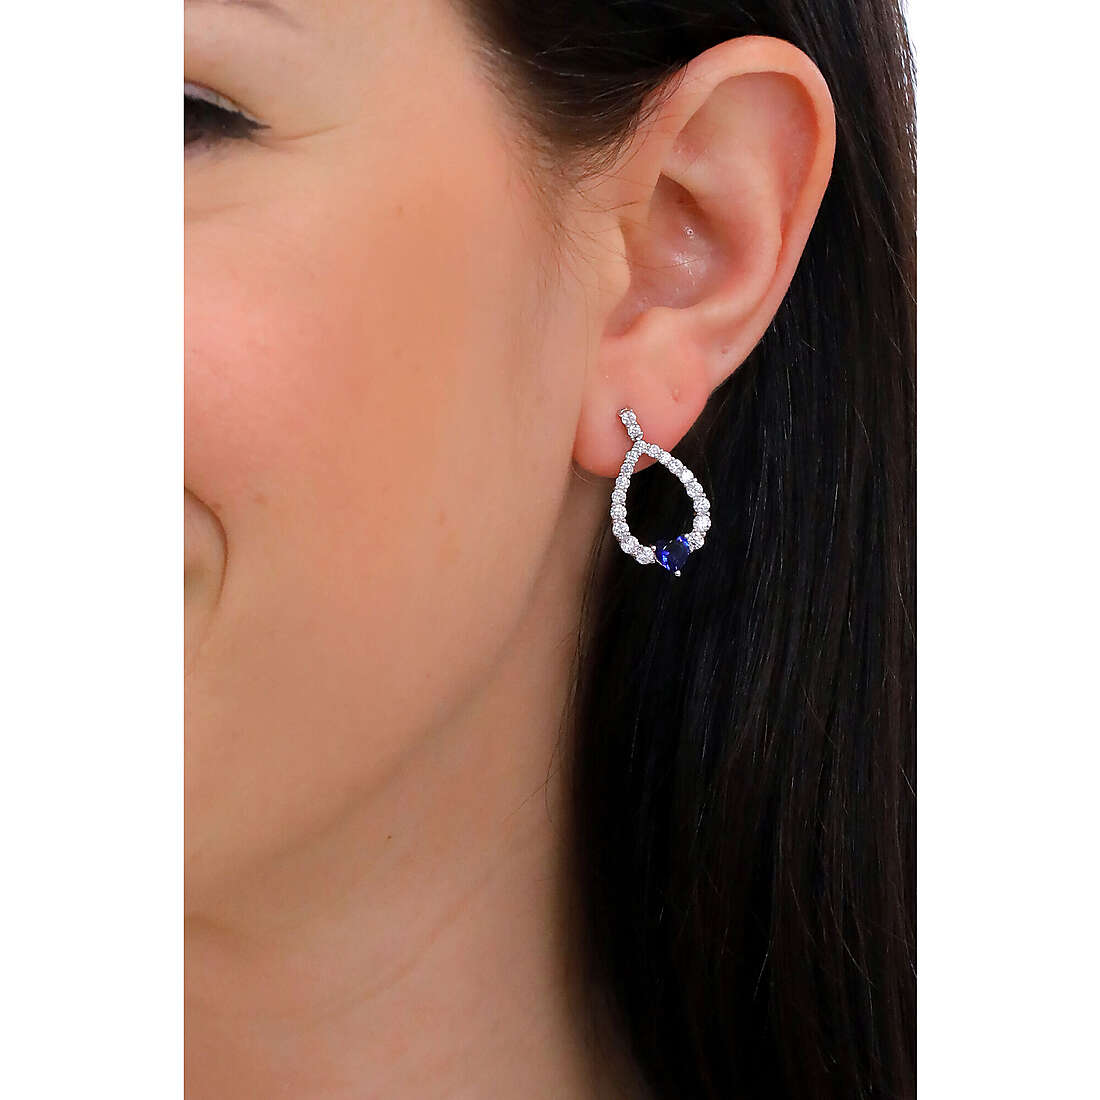 Sovrani earrings Luce woman J7141 wearing